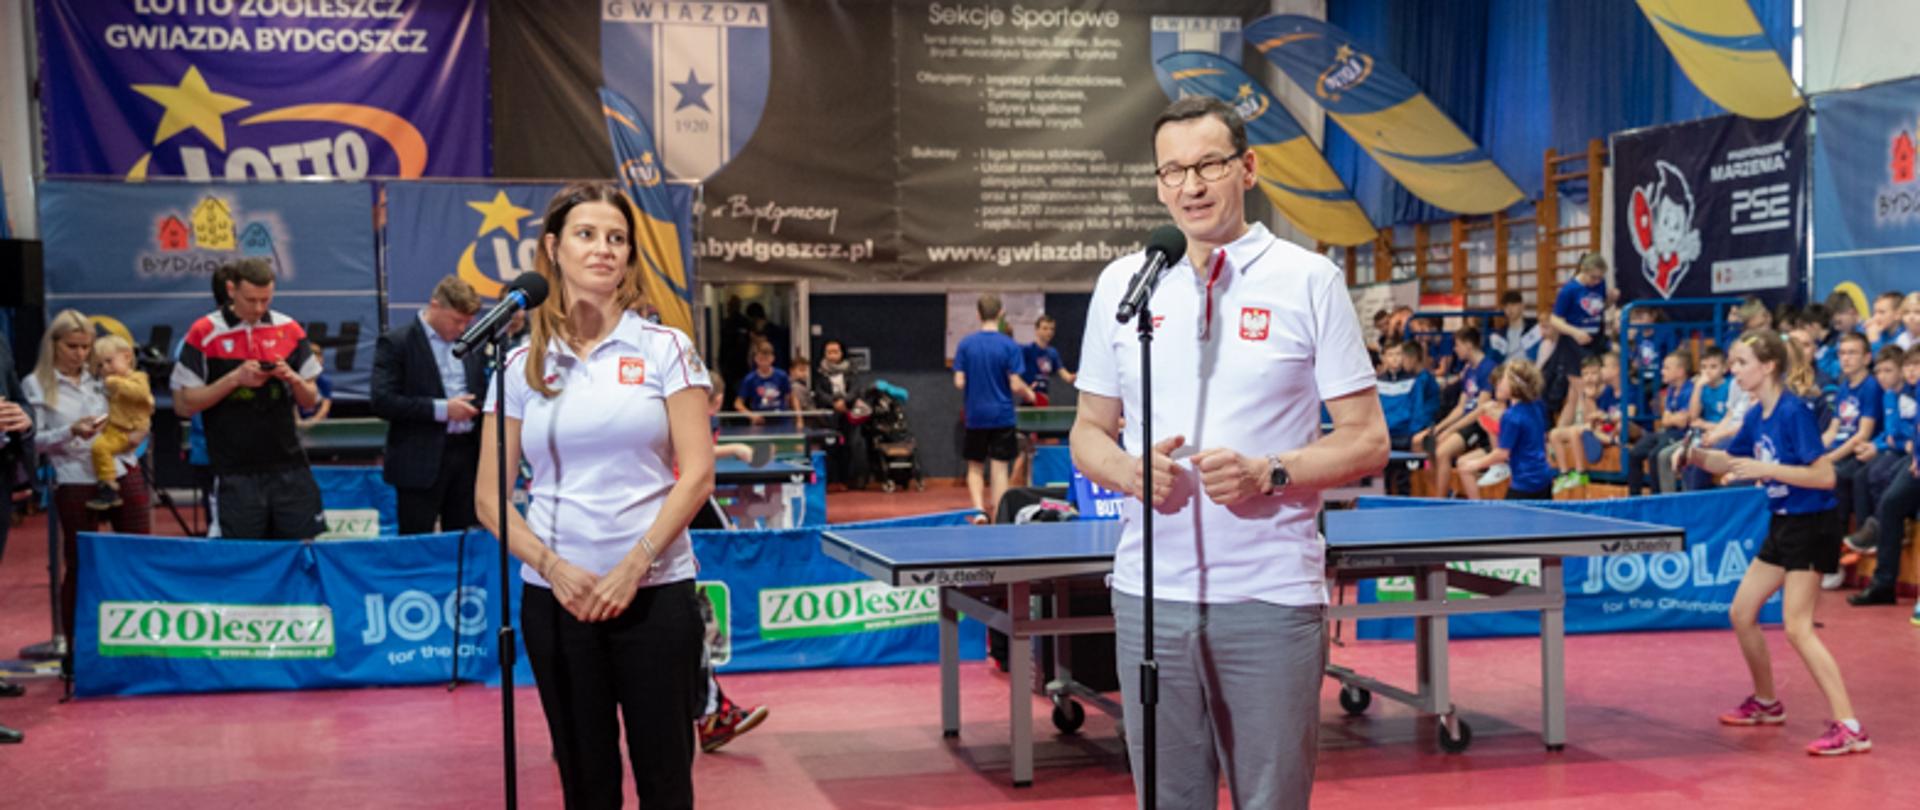 Otwarty trening tenisa stołowego w Bydgoszczy z udziałem Premiera Mateusza Morawieckiego i Minister Danuty Dmowskiej-Andrzejuk